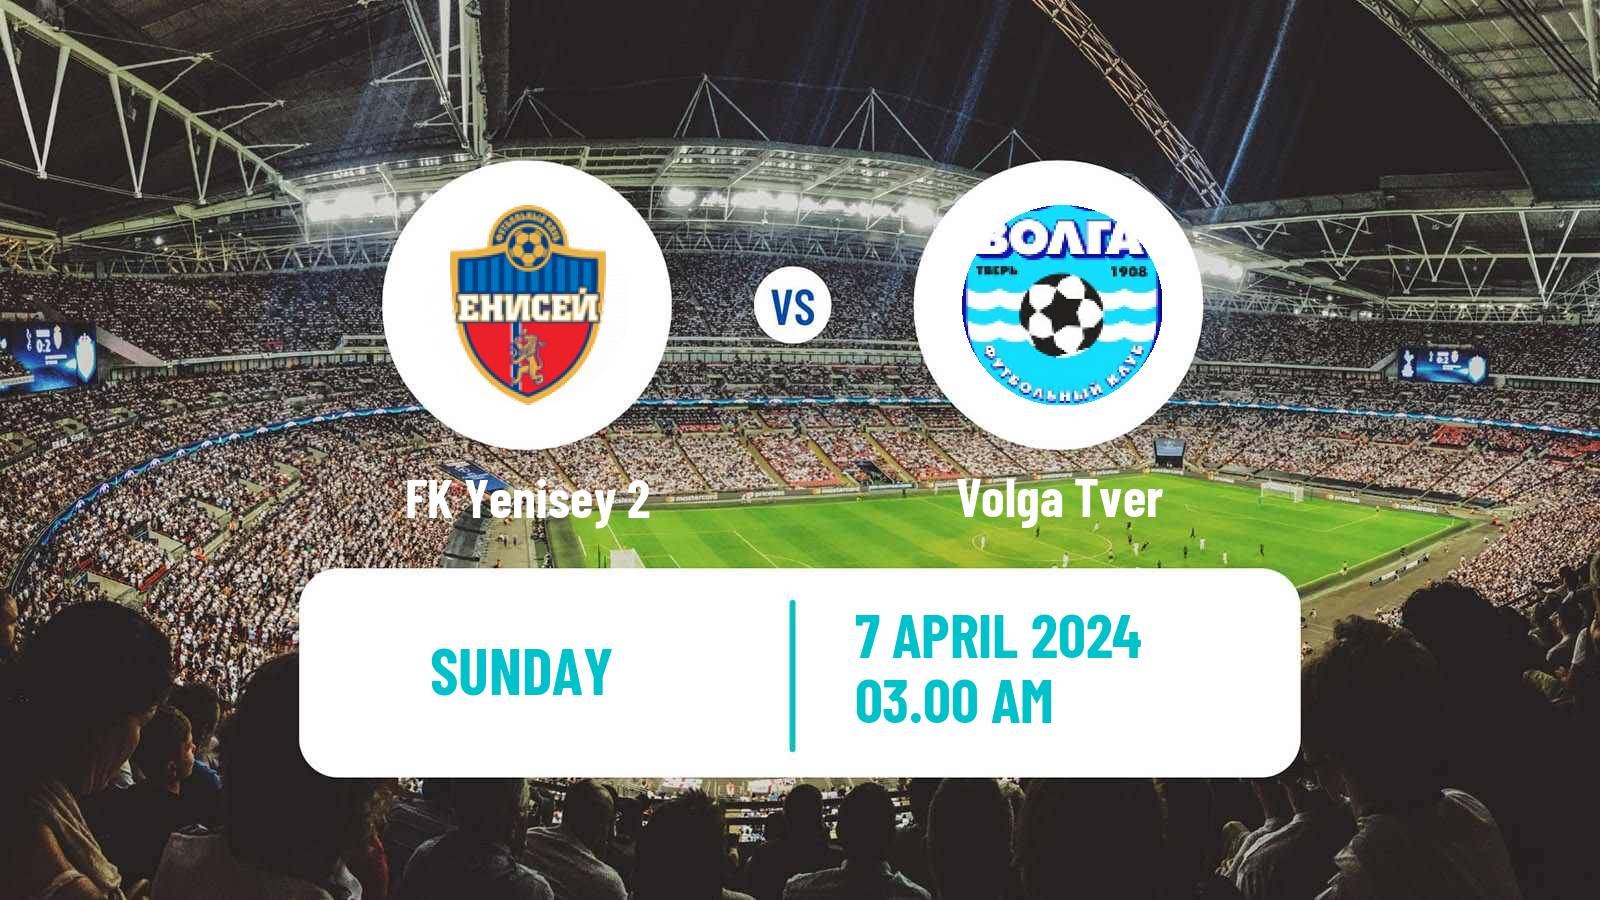 Soccer FNL 2 Division B Group 2 Yenisey 2 - Volga Tver